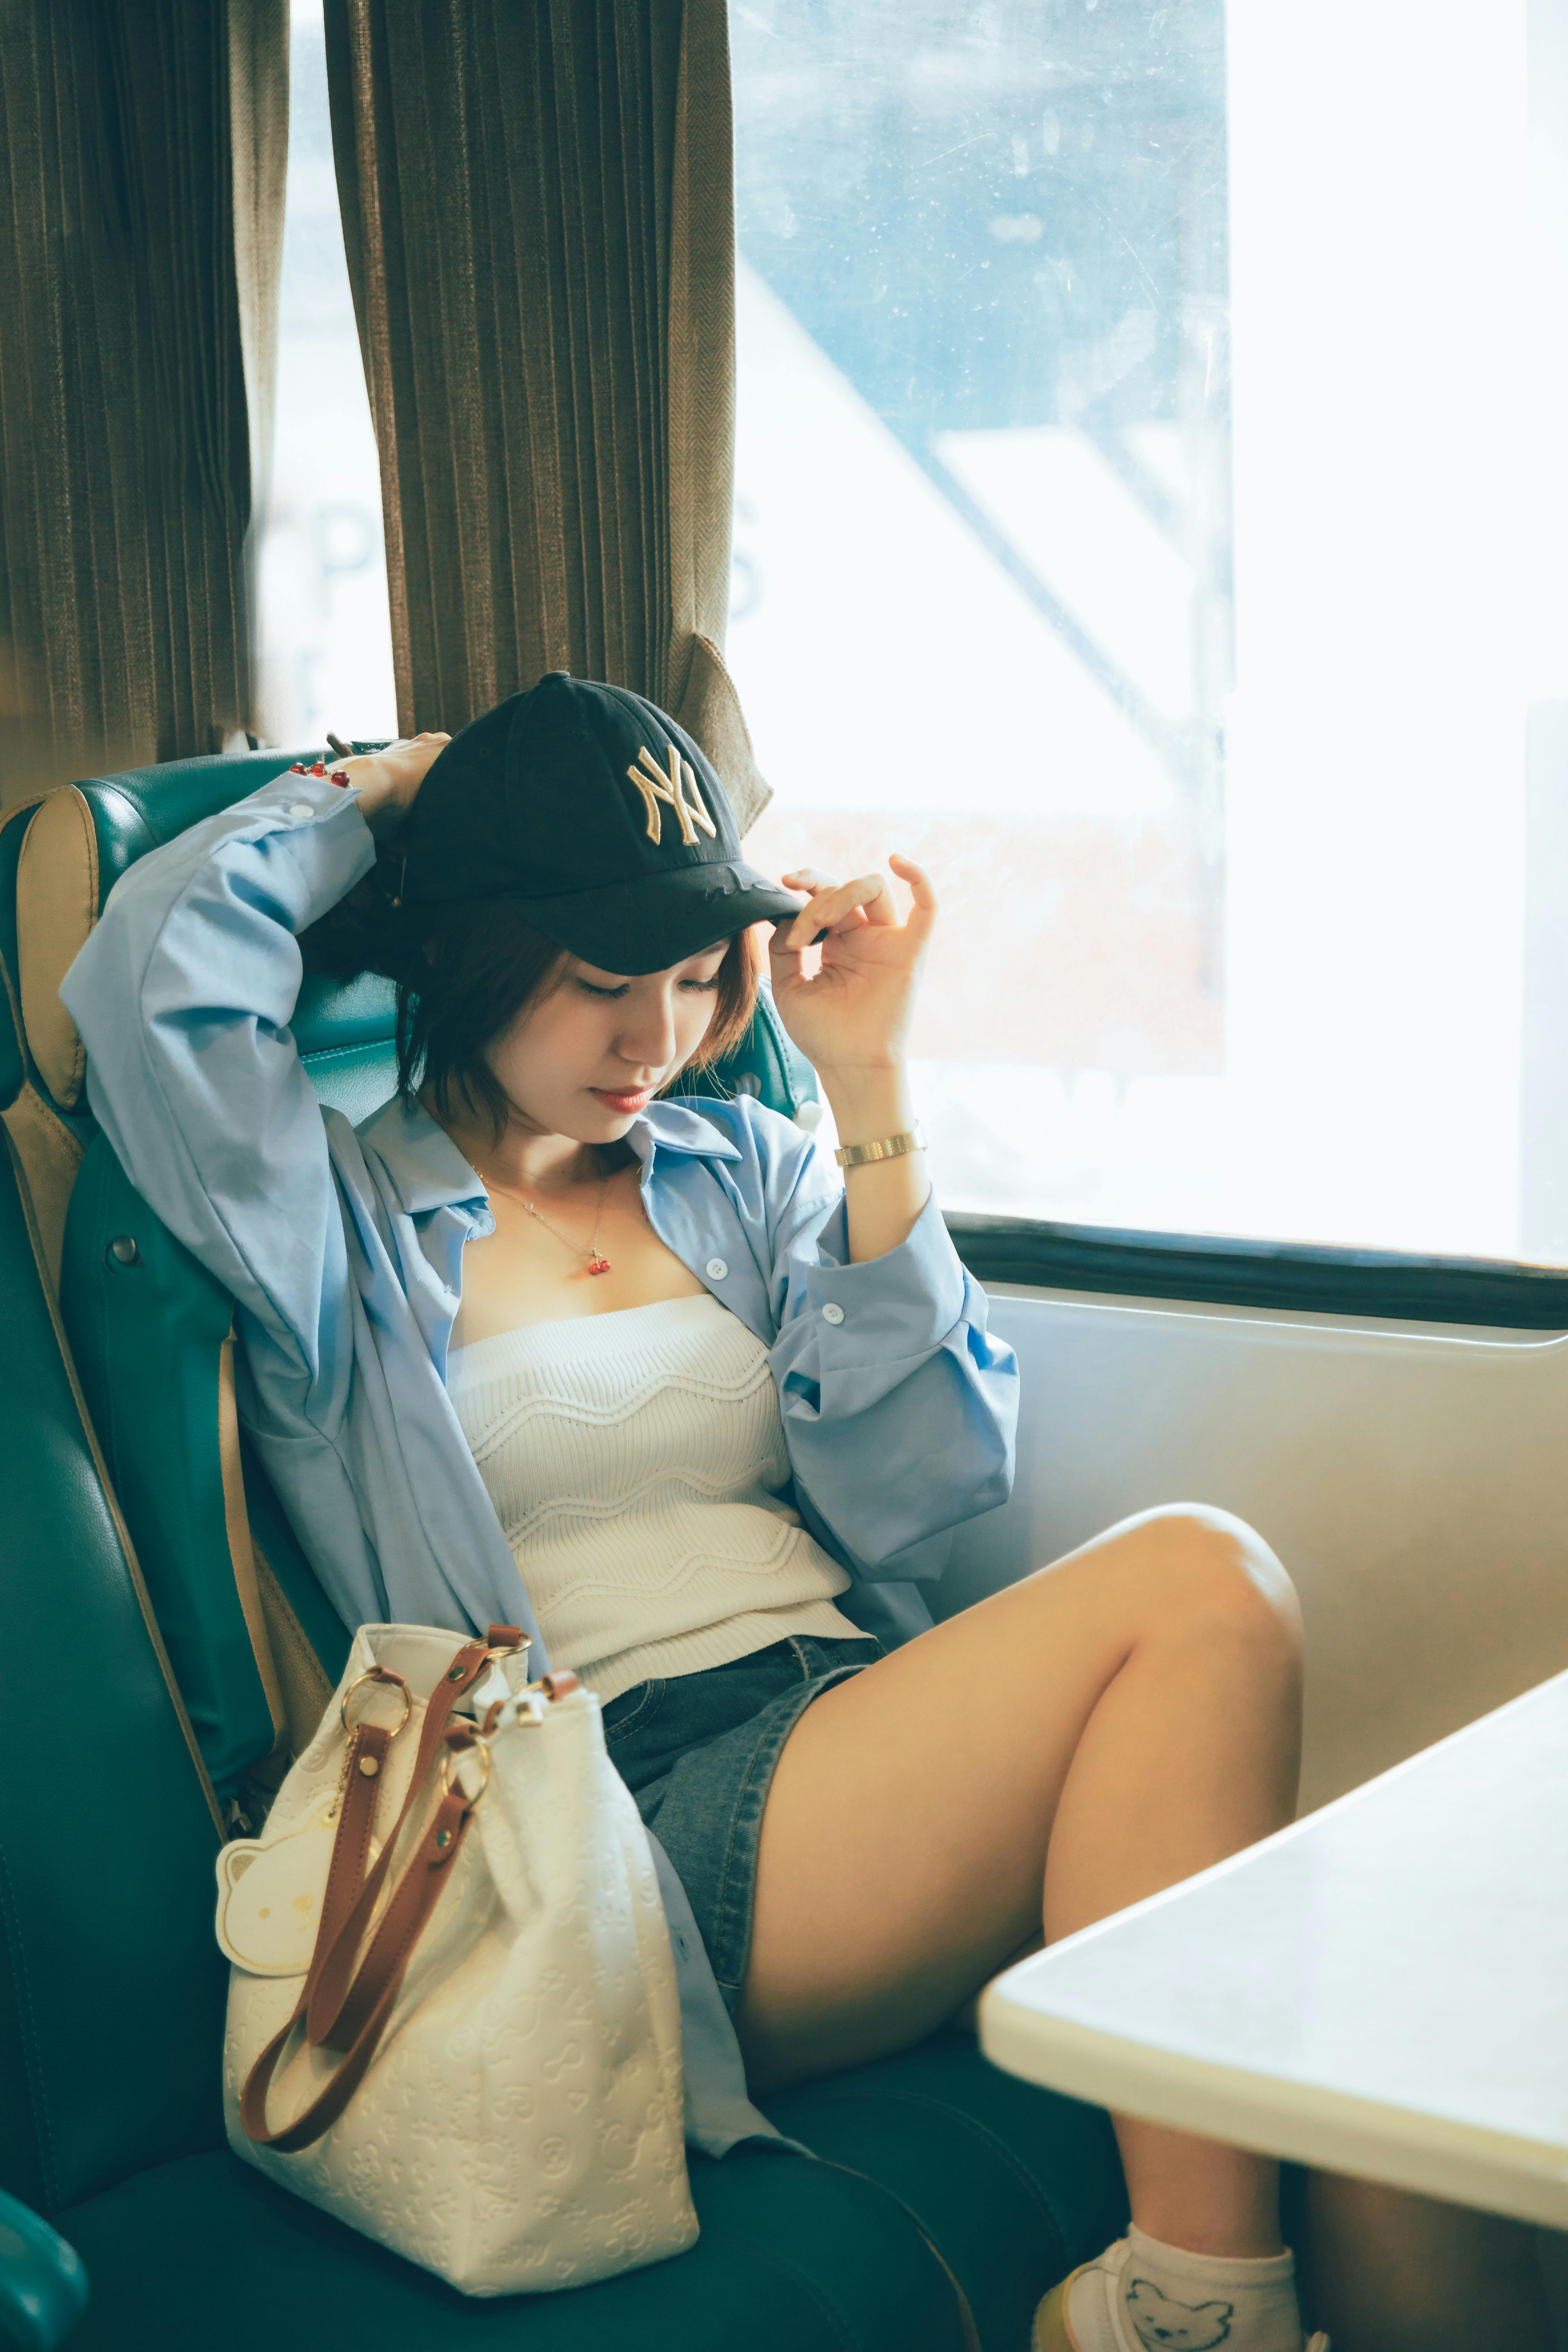 Una mujer sentada en el metro | Foto: Pexels